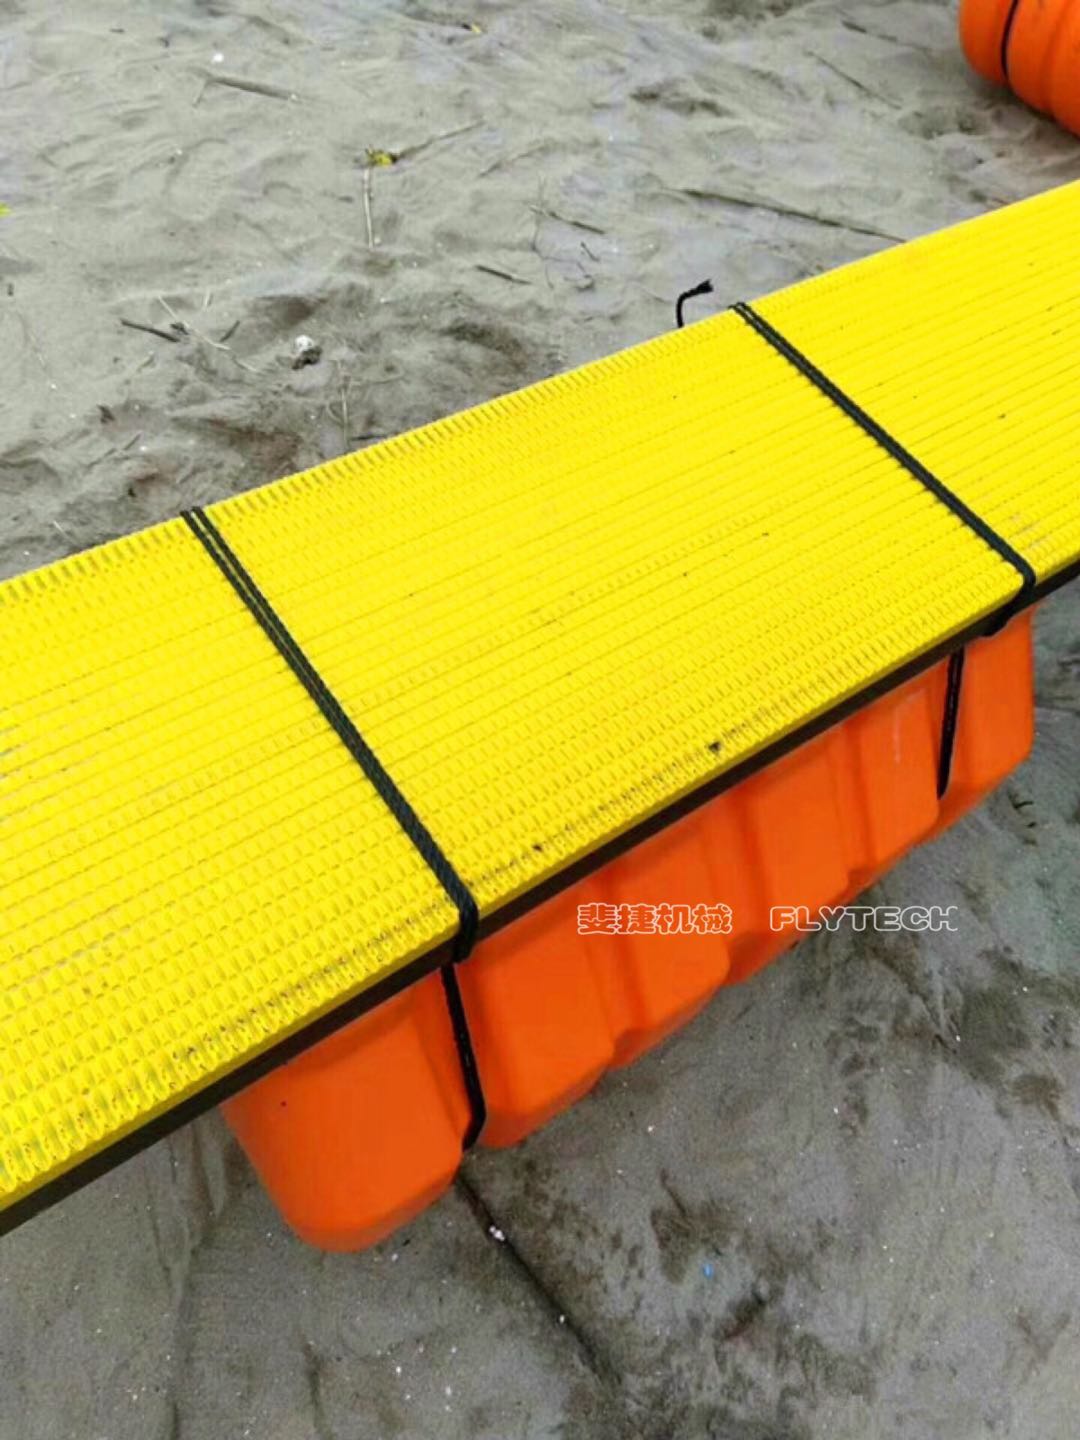 PE塑料防滑踏板生产线 海洋防滑踏板生产线图片